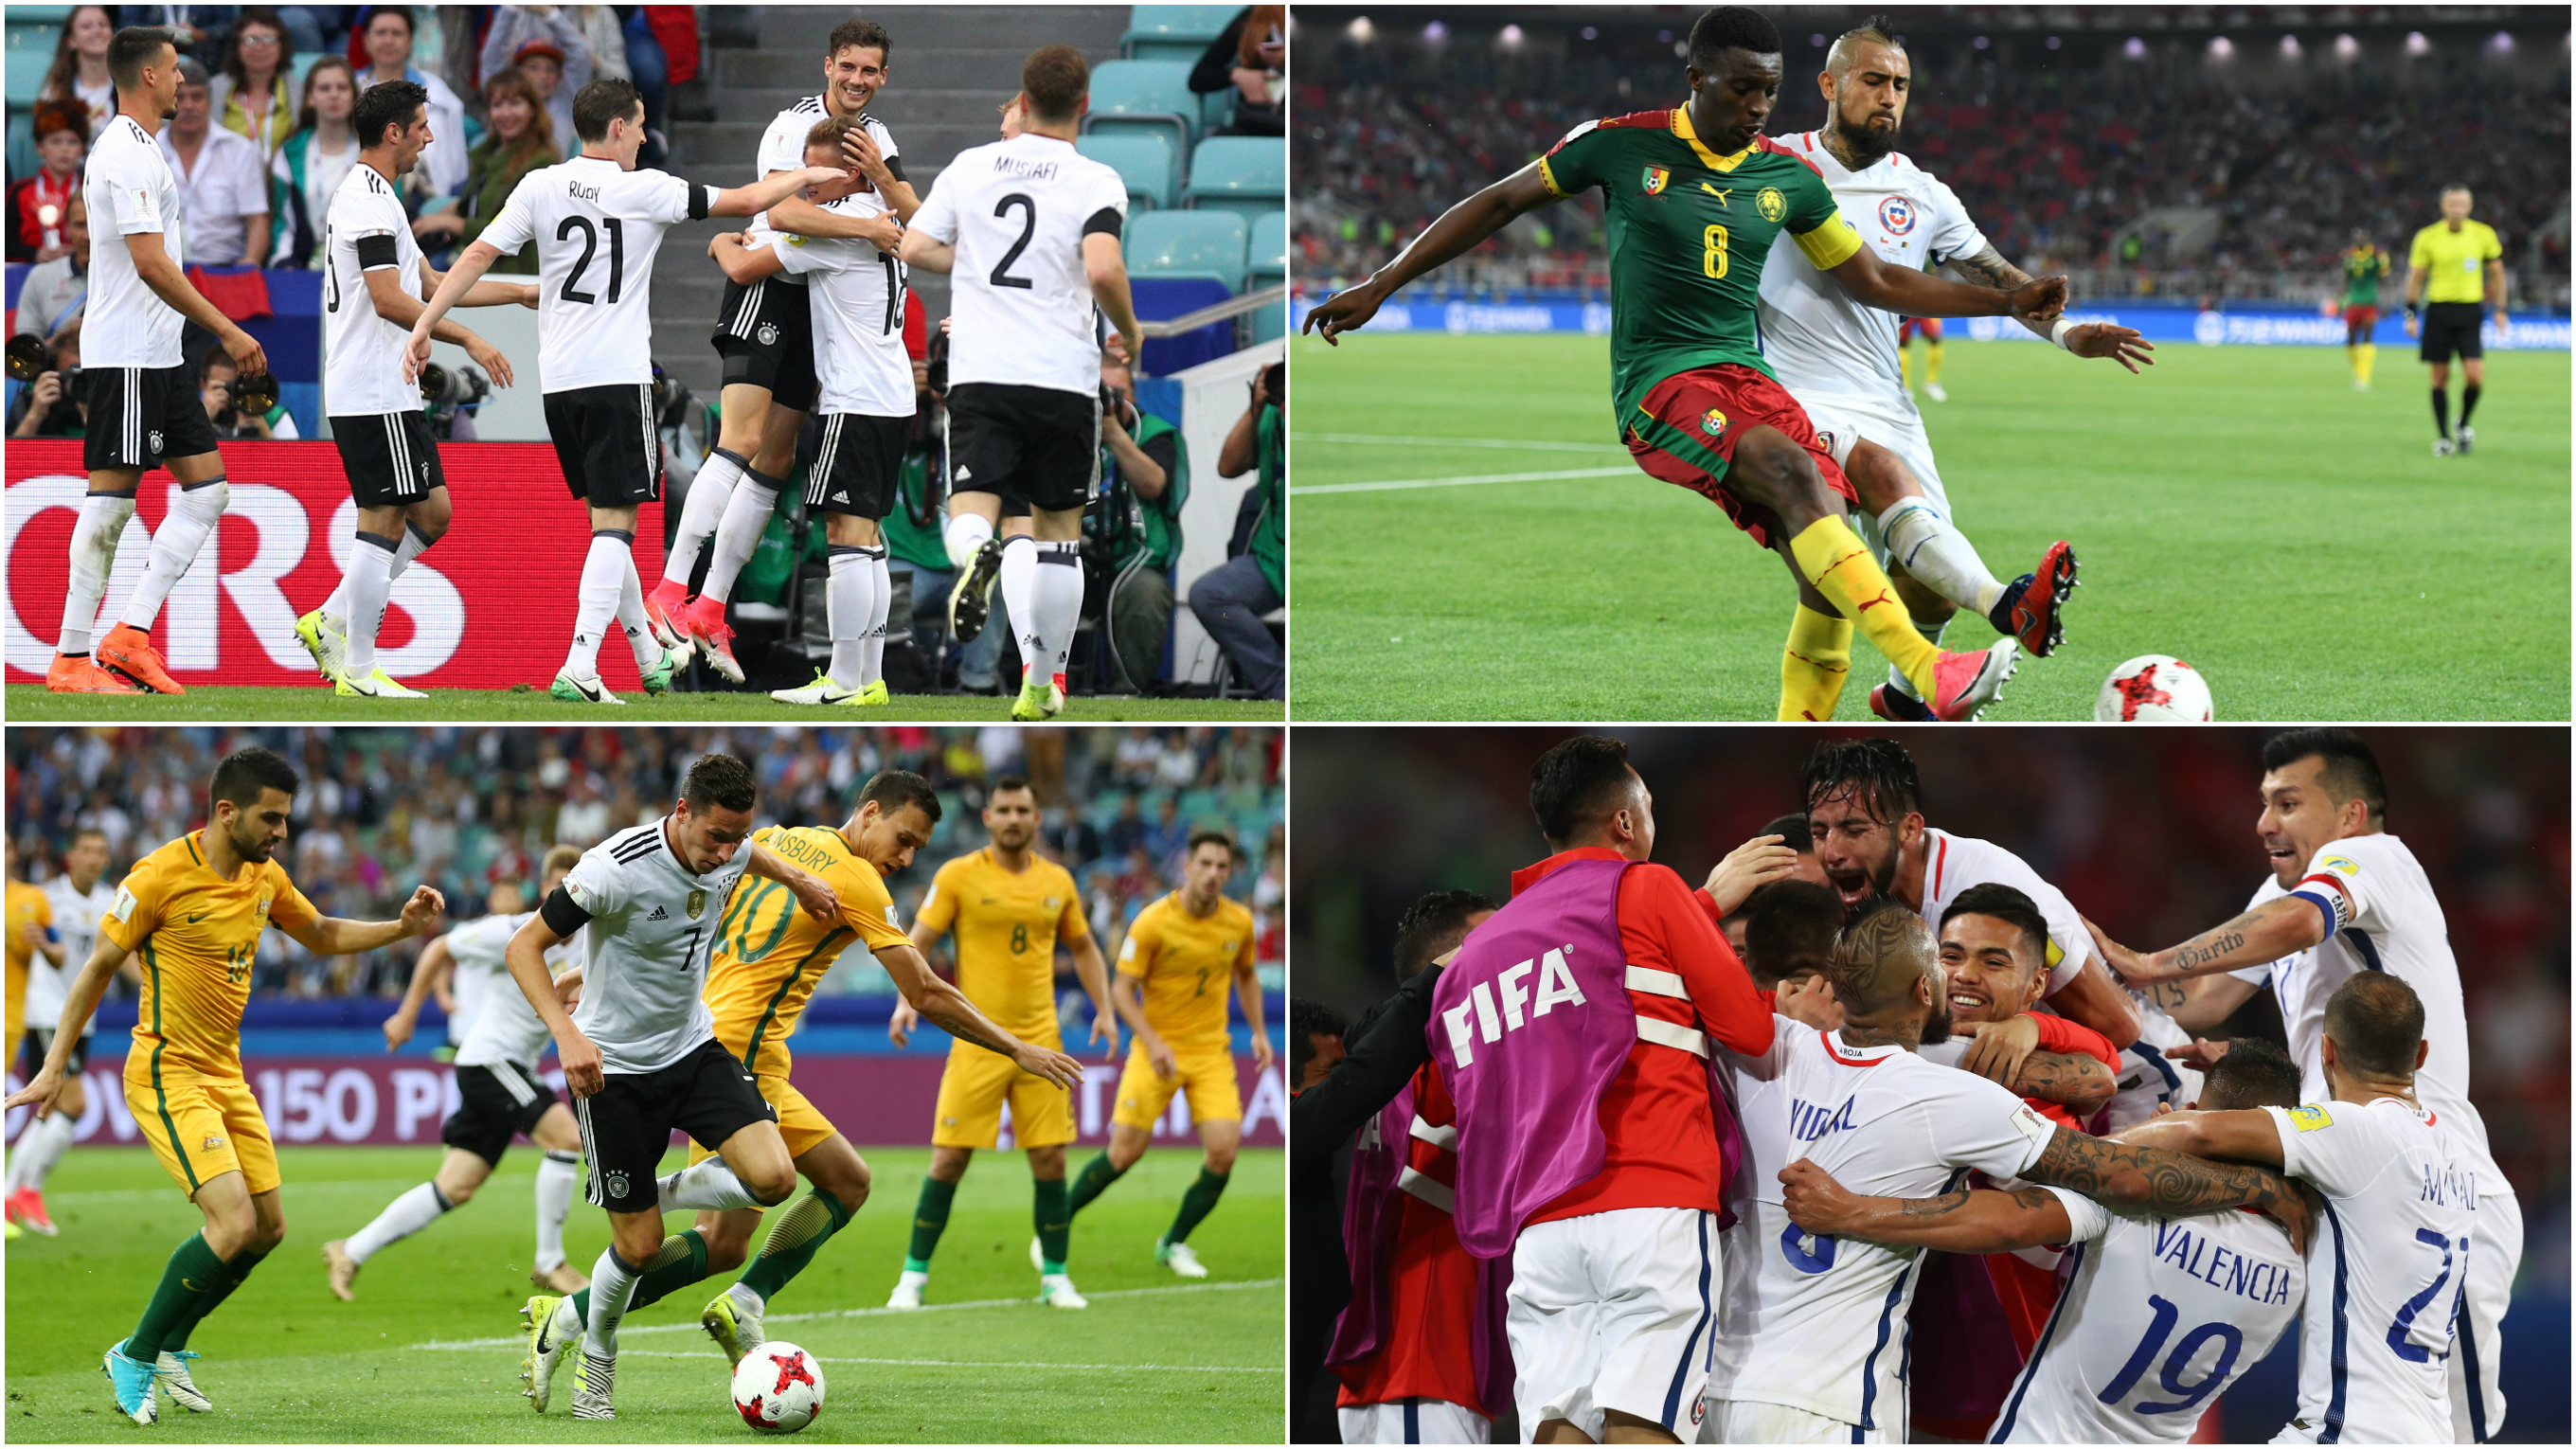 Sieben Spiele, fünf Siege, zwei Niederlagen: In Kasan steigt Duell acht mit Chile © Getty Images/Collage DFB